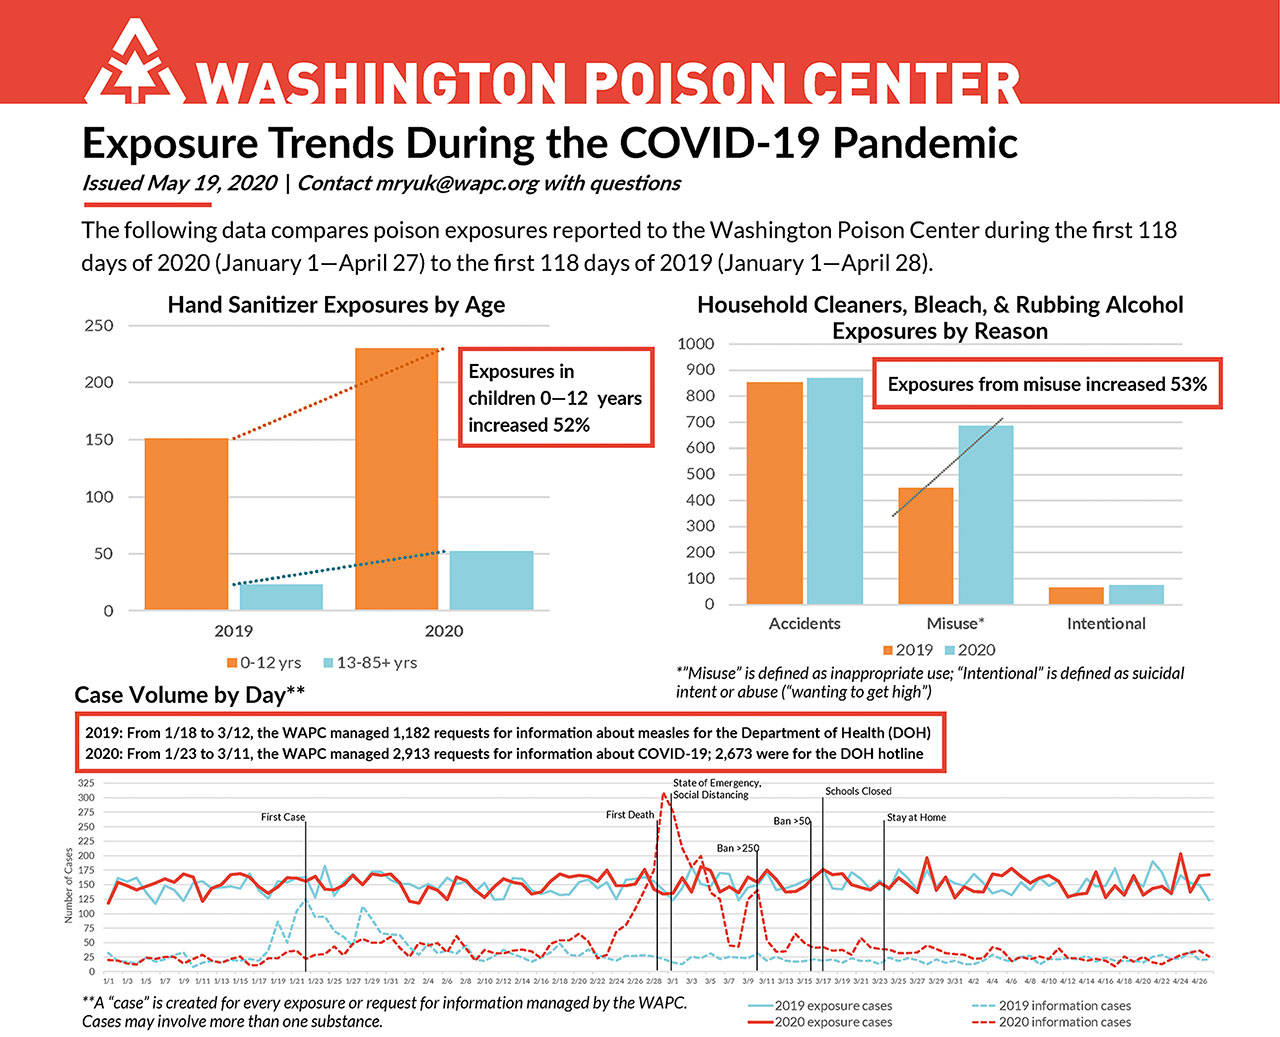 Image courtesy the Washington Poison Center.